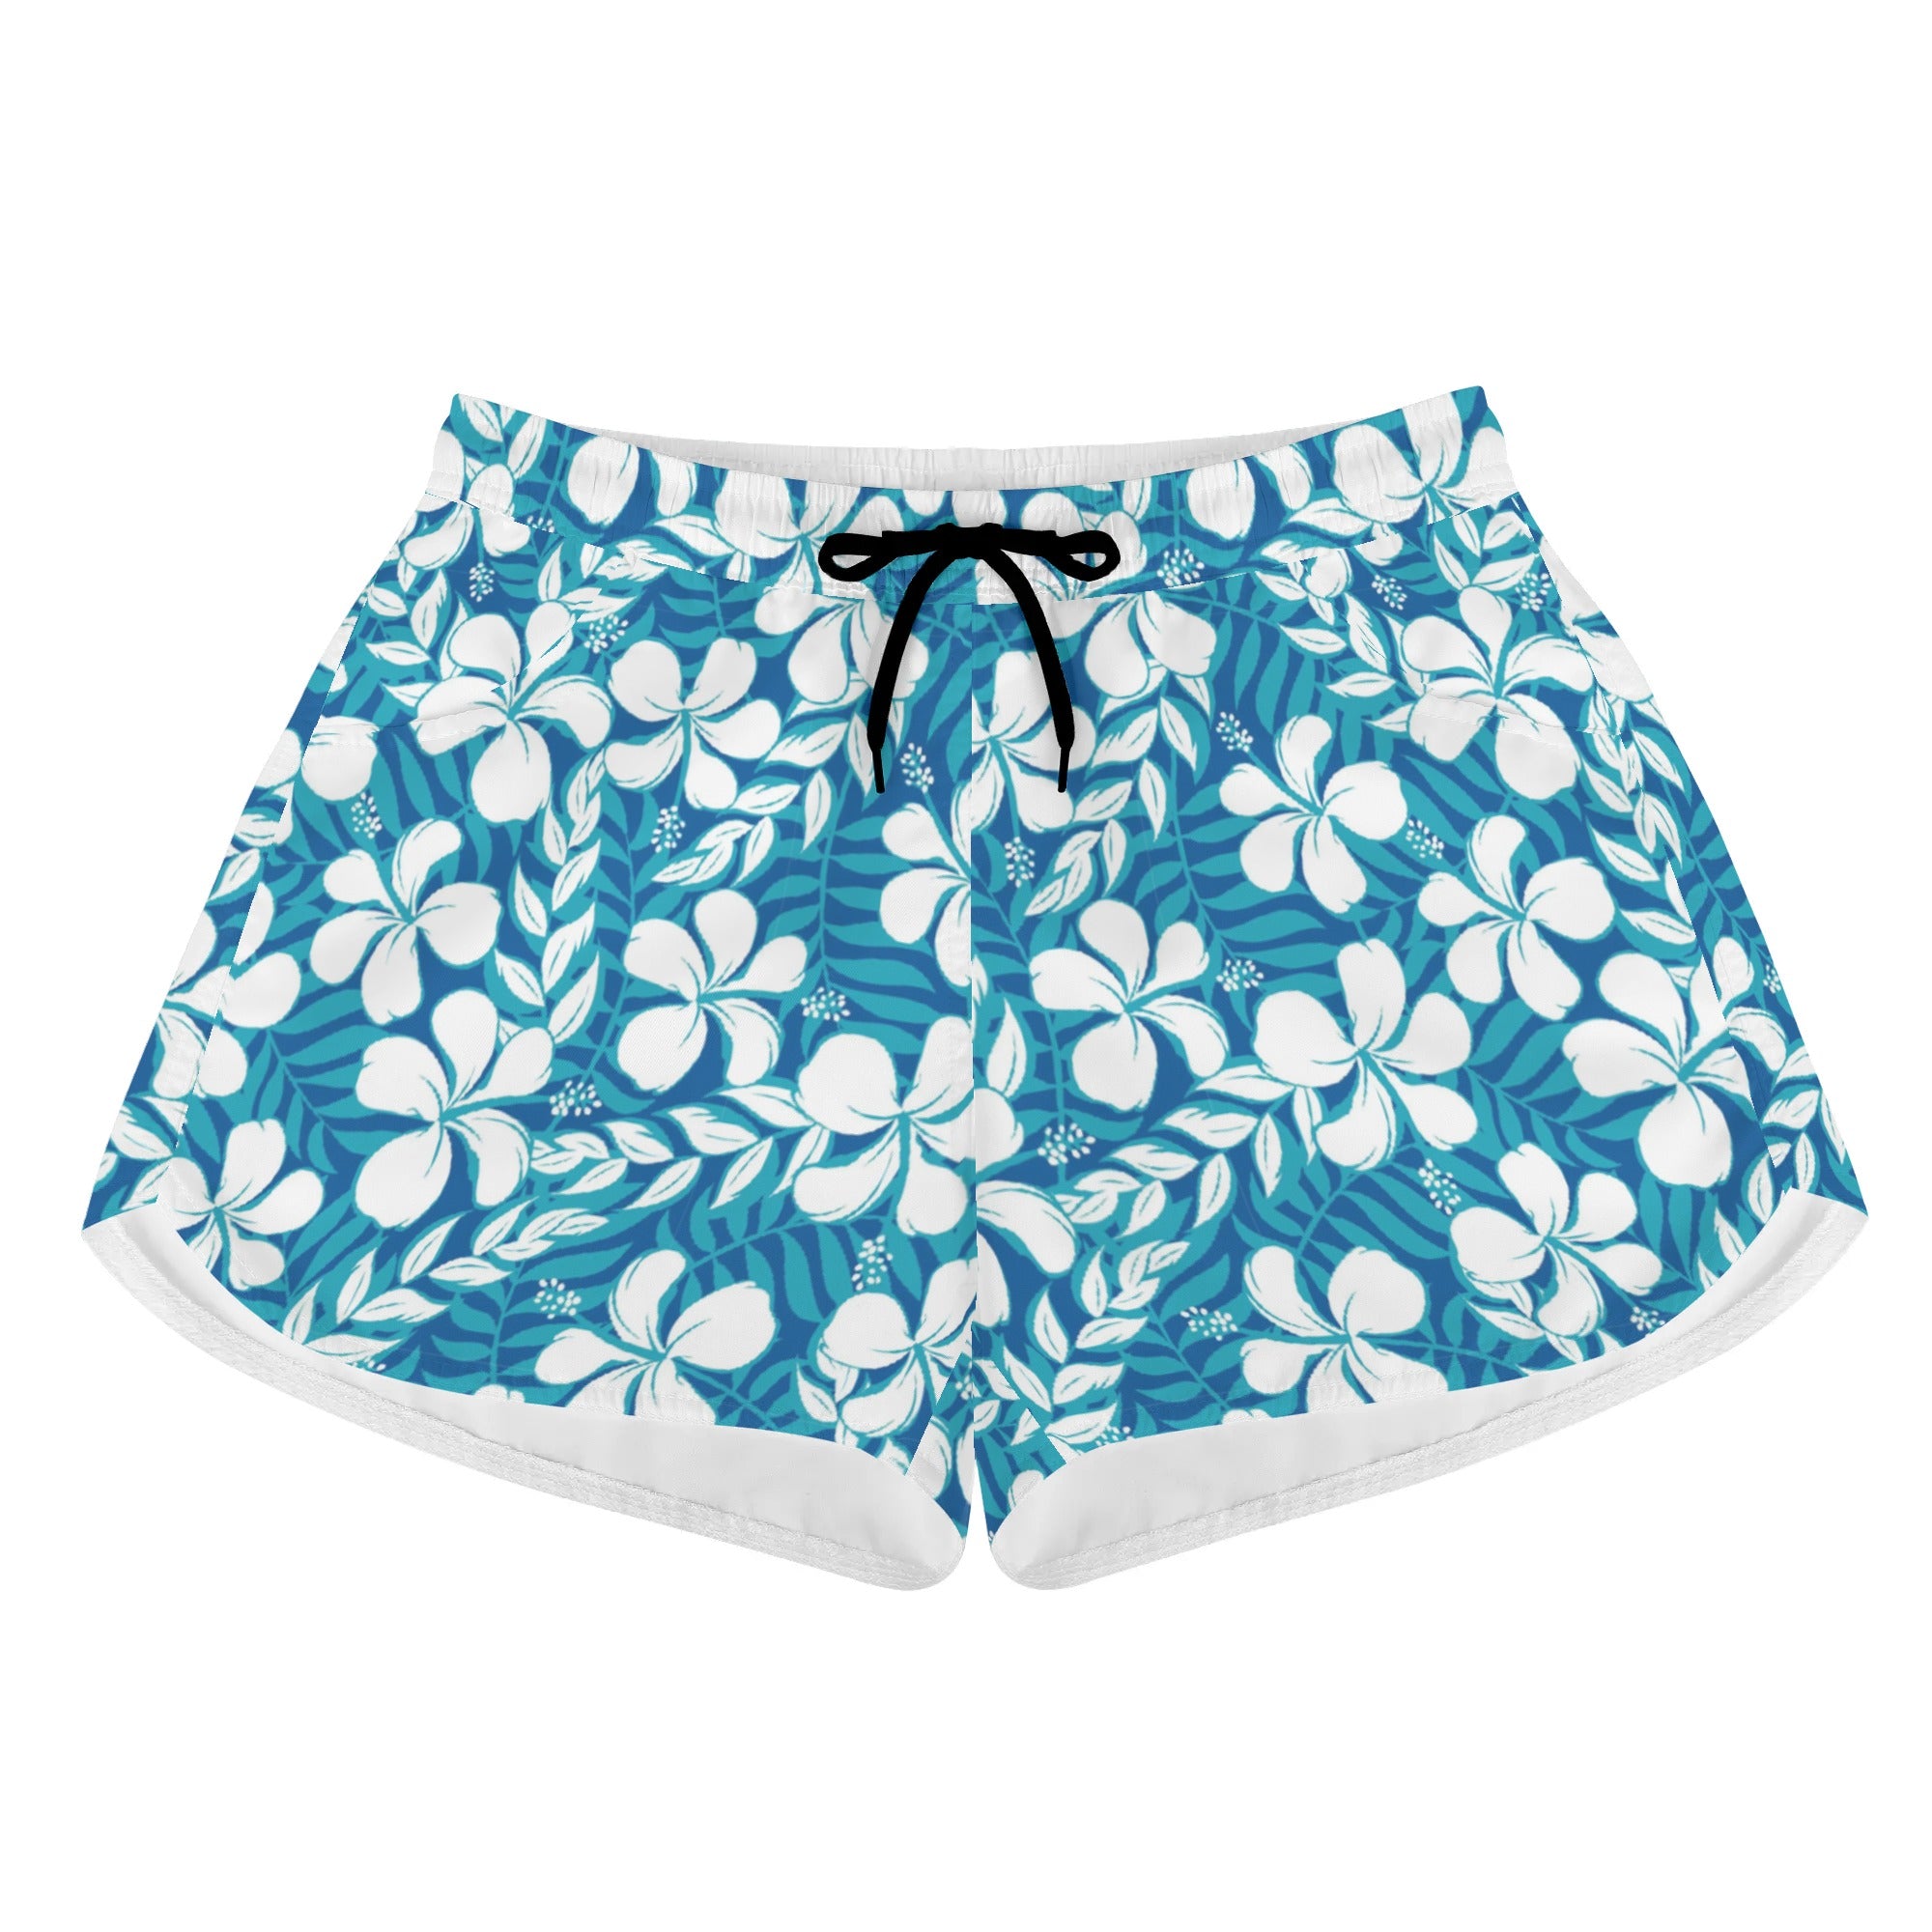 Womens Printed Beach Shorts - Plumeria in Blue